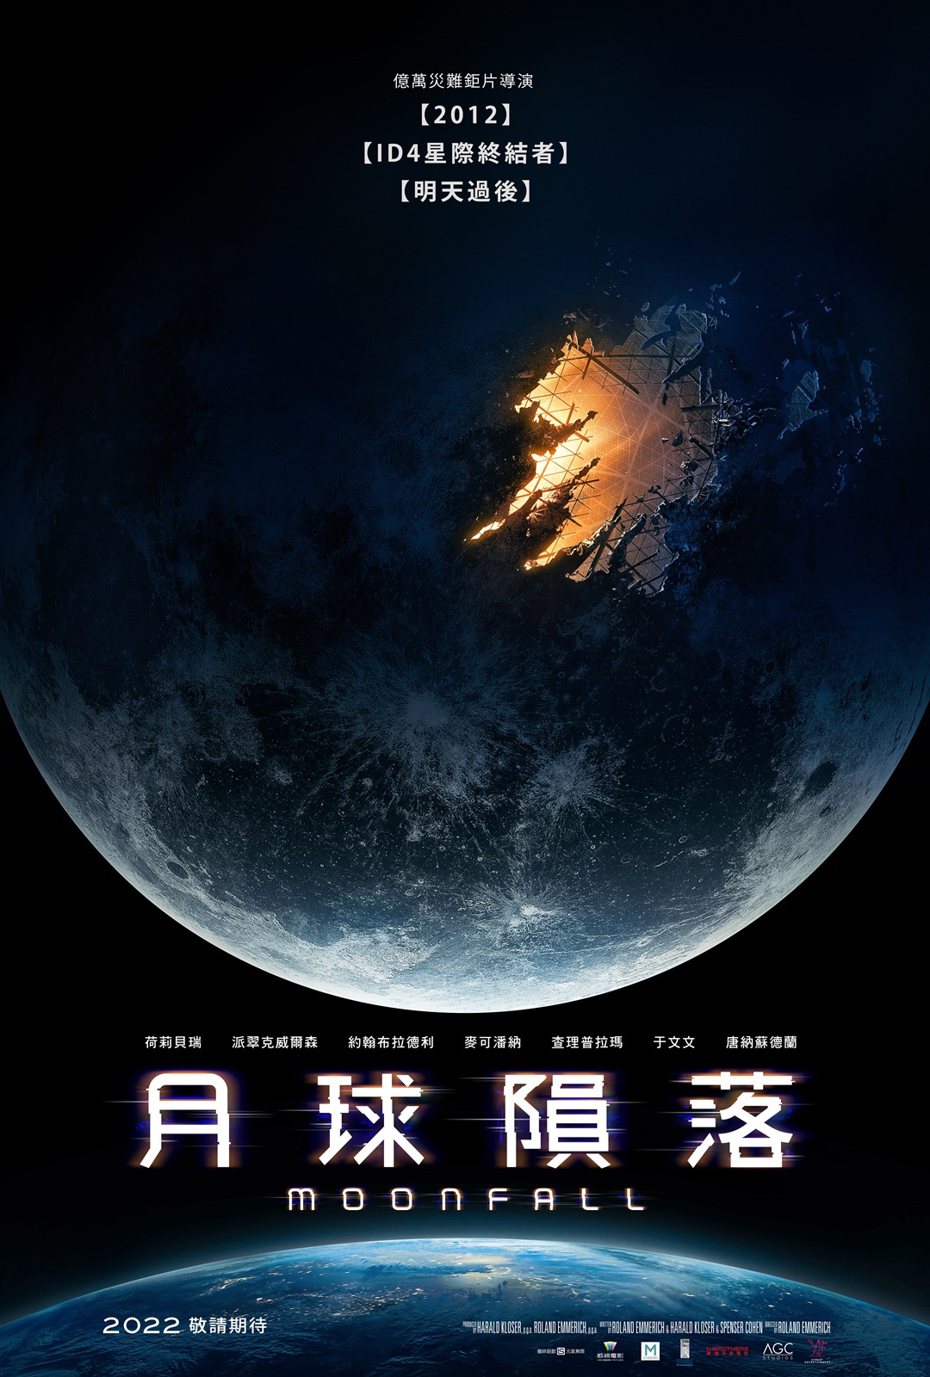 《月球隕落》中文版海報。龍祥提供